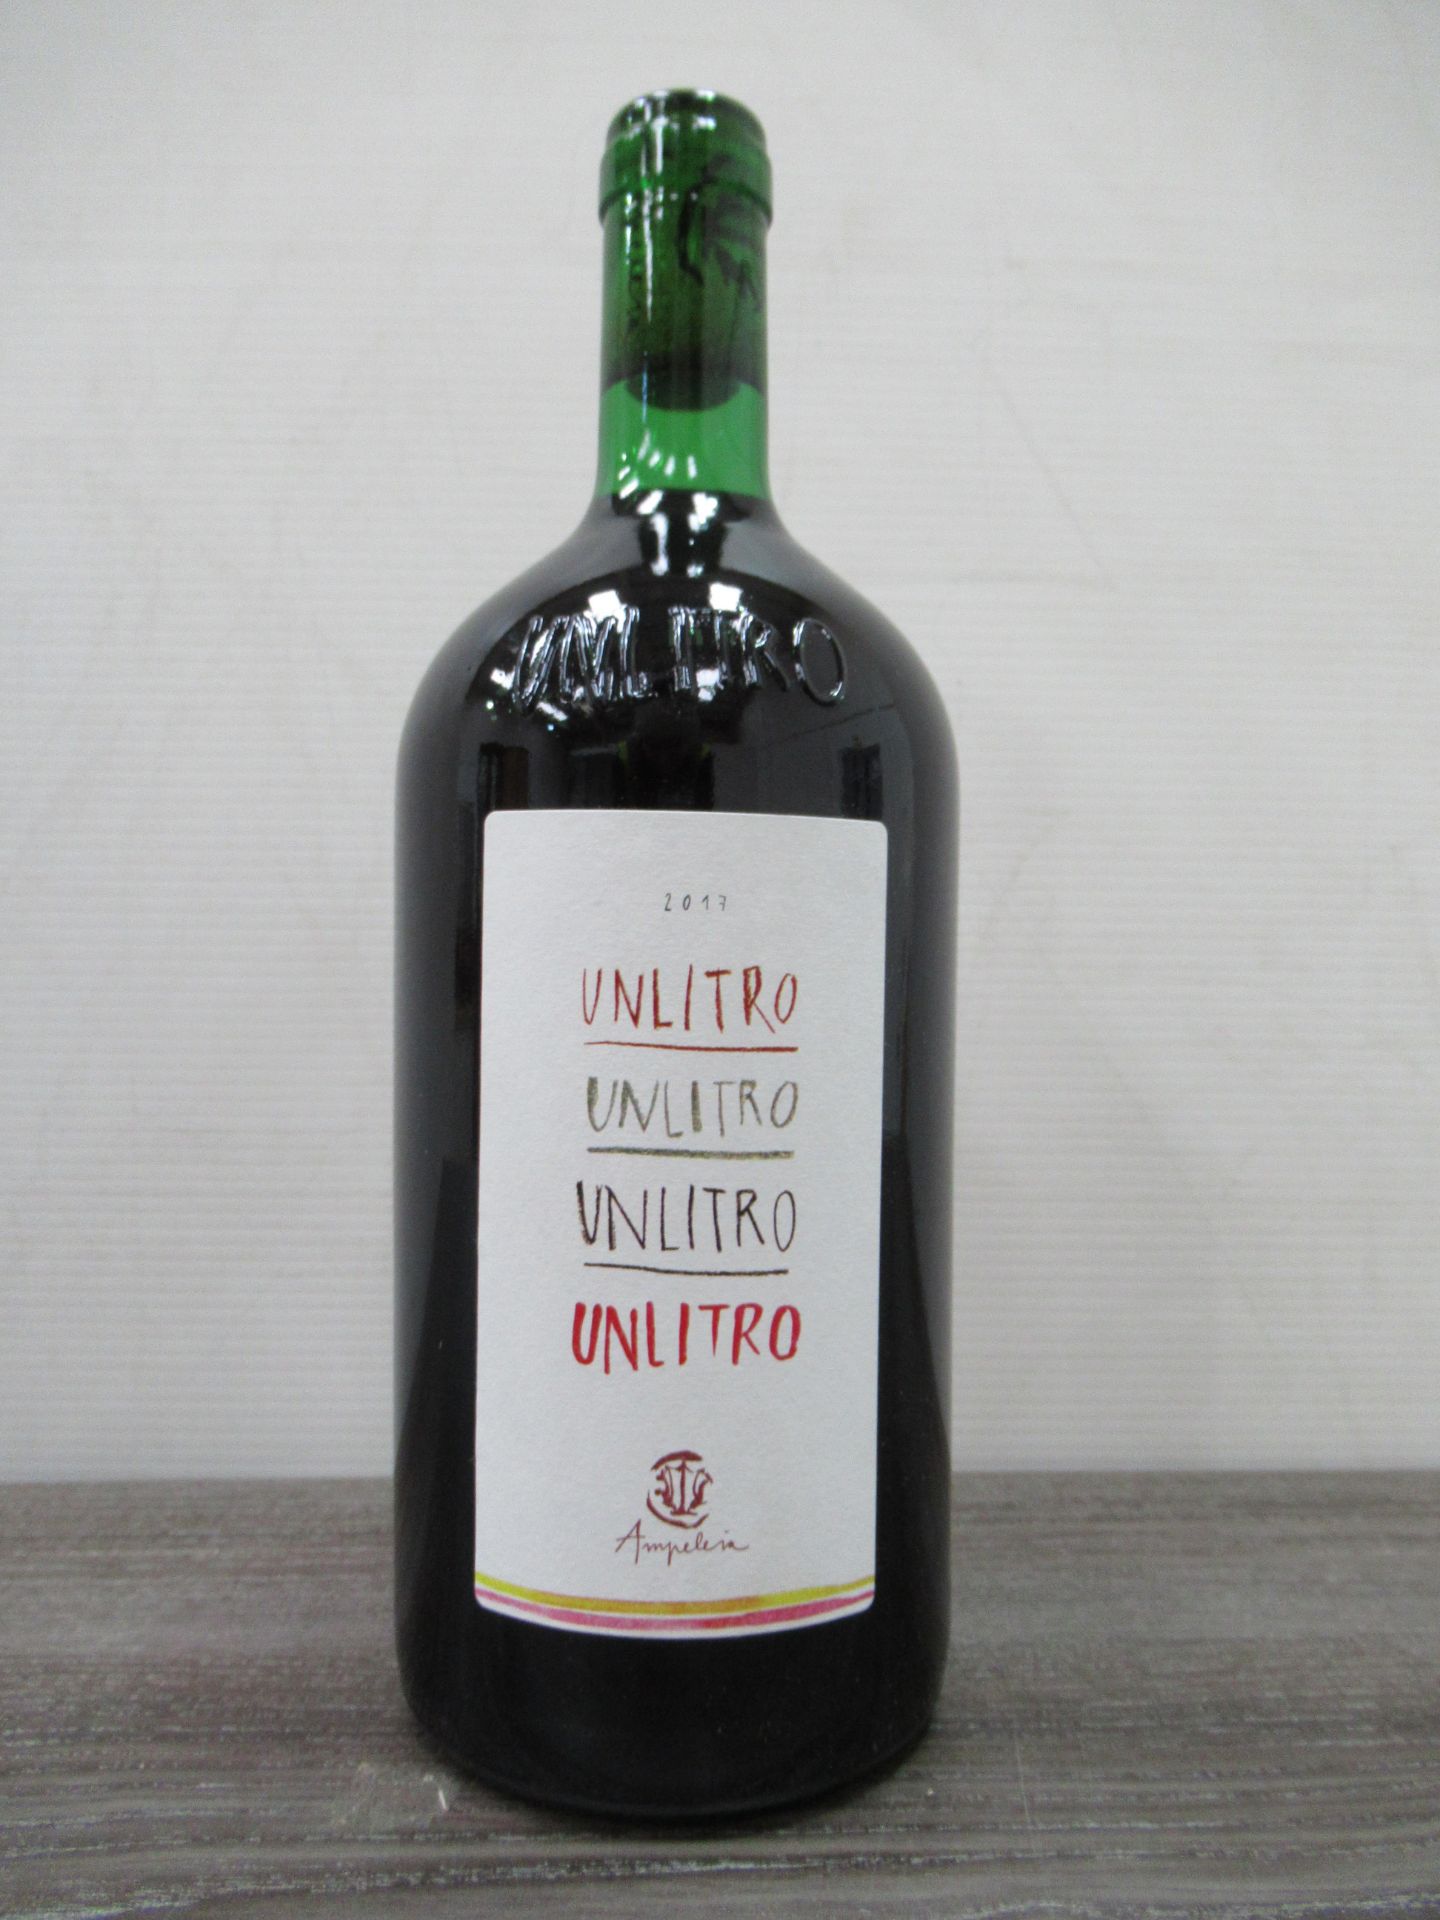 12 x Bottles "2 Cases" of Ampeleia Unlitro 2017